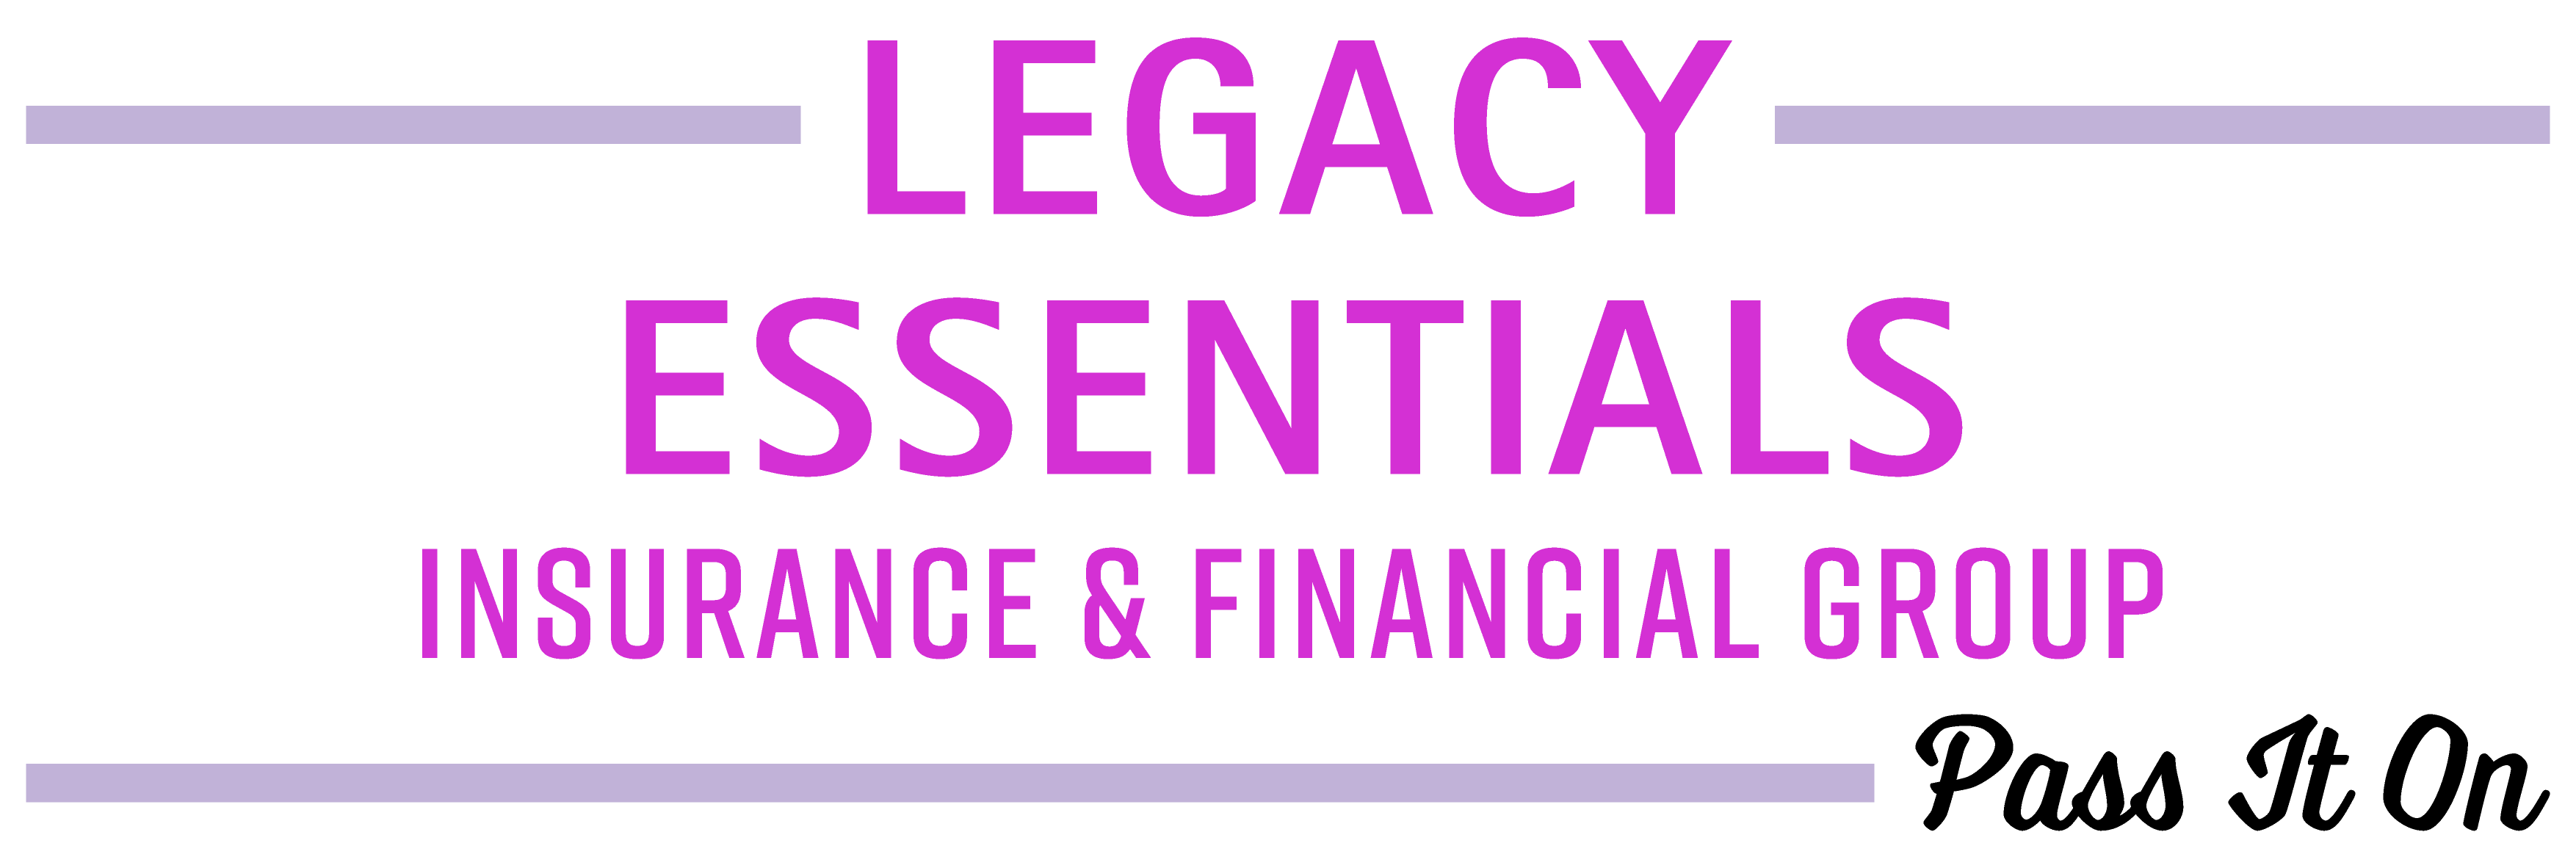 Legacy-Essentials-logo-01